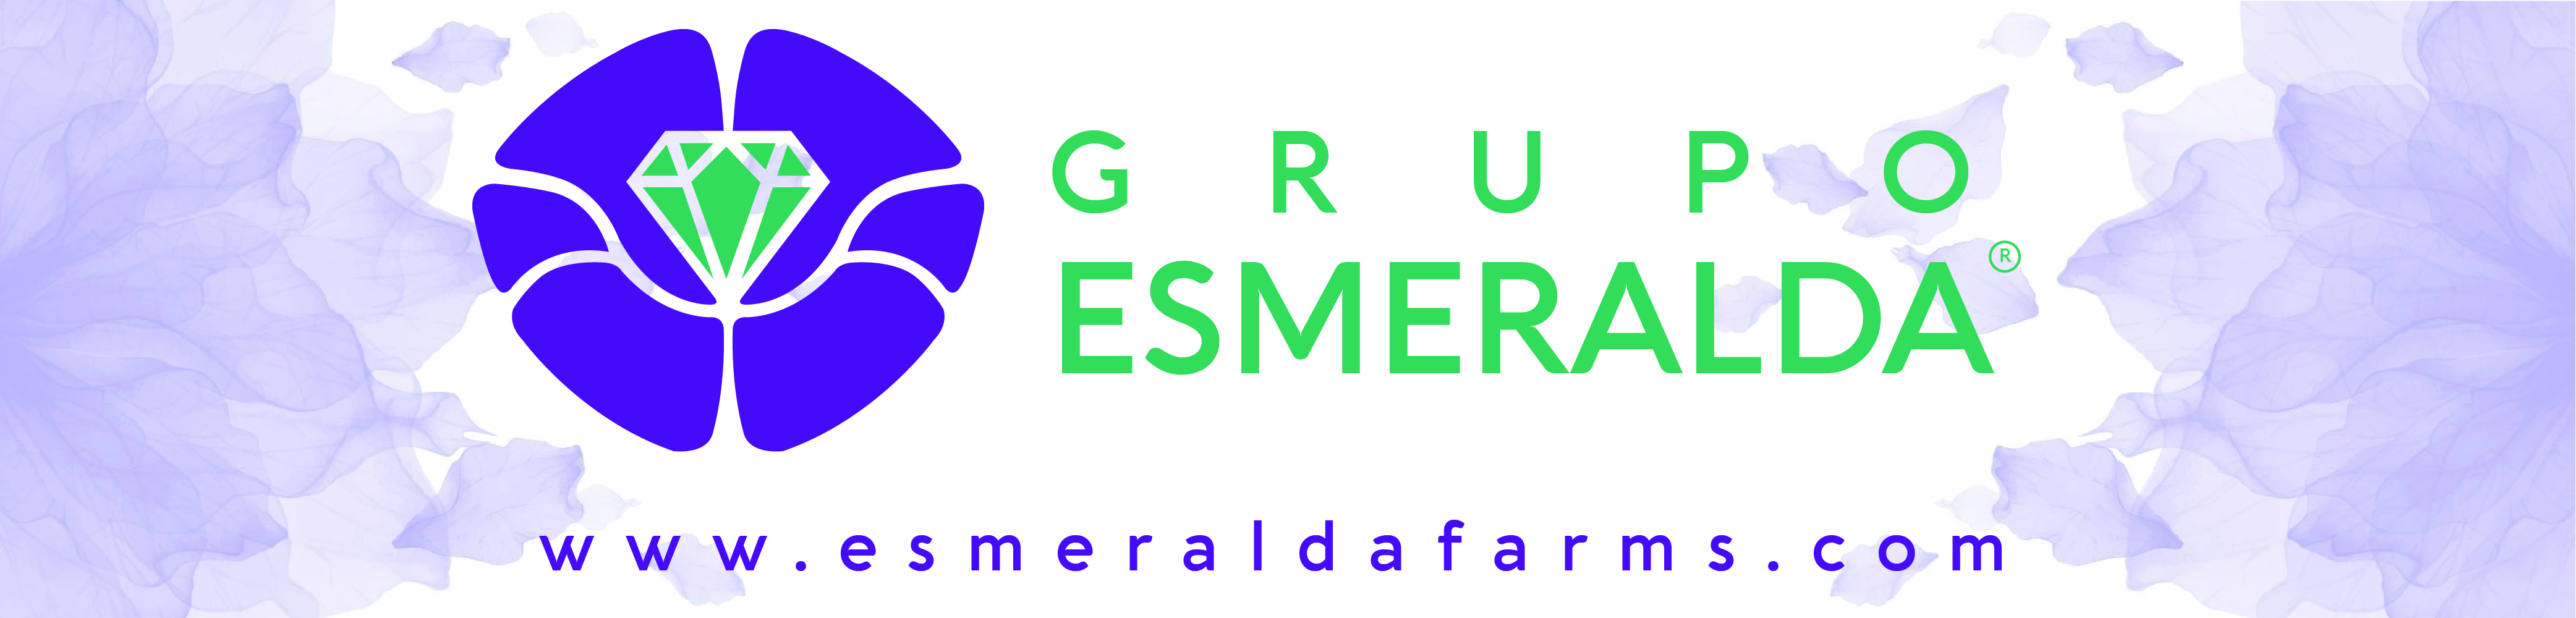 Esmeralda Farms